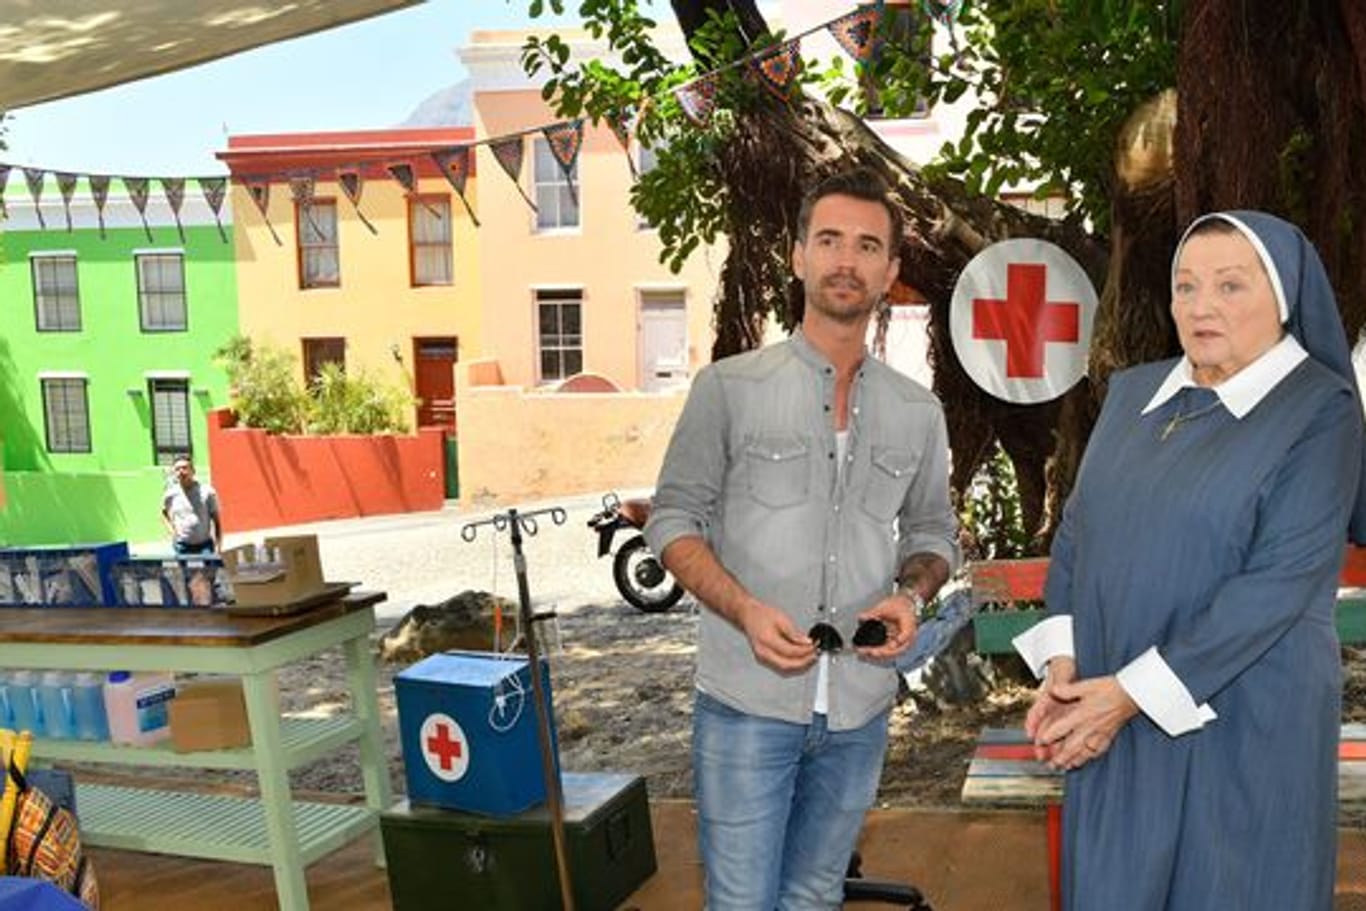 Kapitän Max Parger (Florian Silbereisen) und Schwester Magdalena (Marianne Sägebrecht) sorgen sich um die Gesundheit der Kinder in Südafrika.